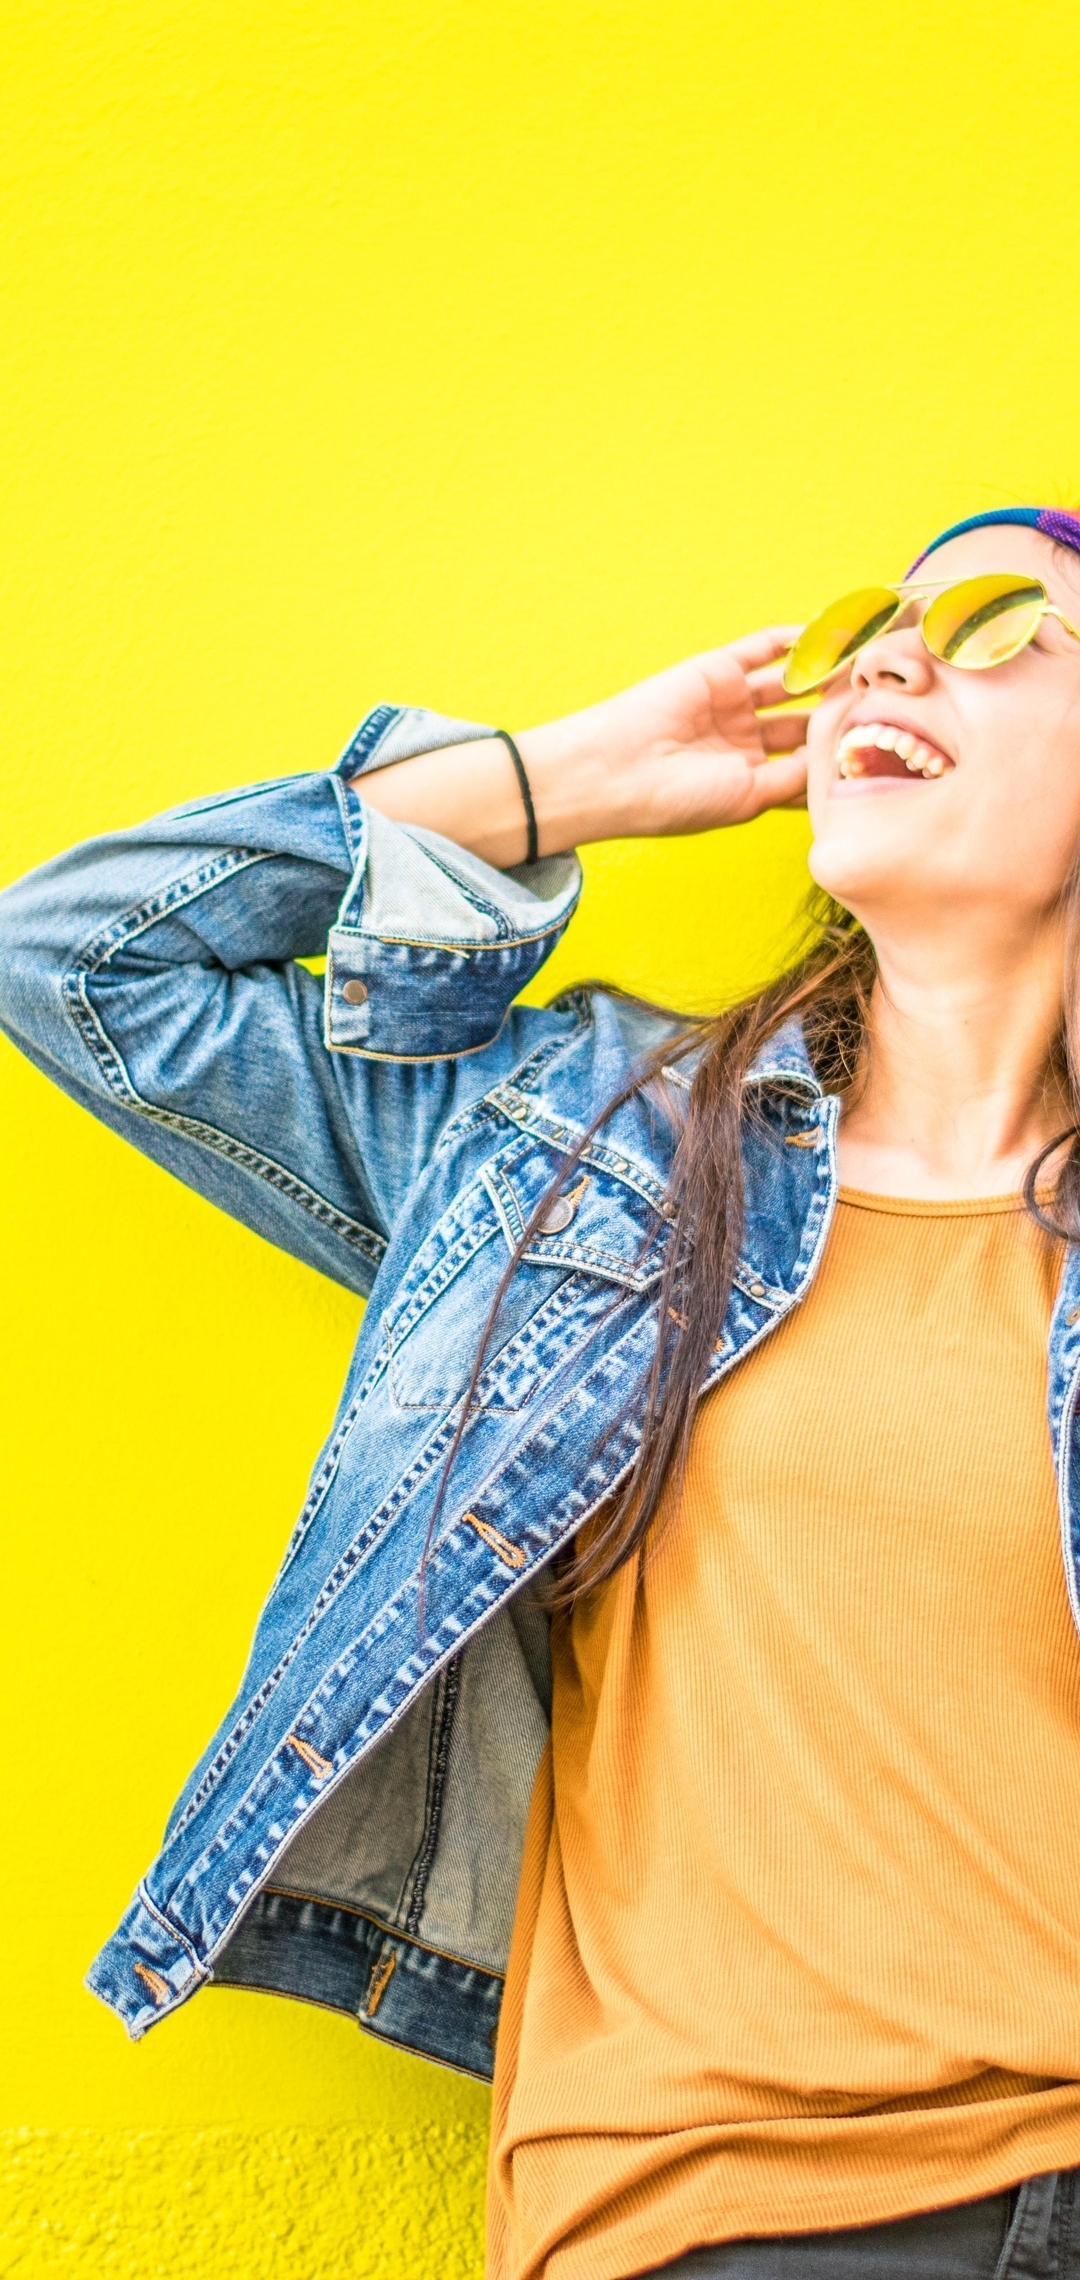 Картинка: Весёлая, настроение, девушка, очки, джинсовка, жёлтый фон